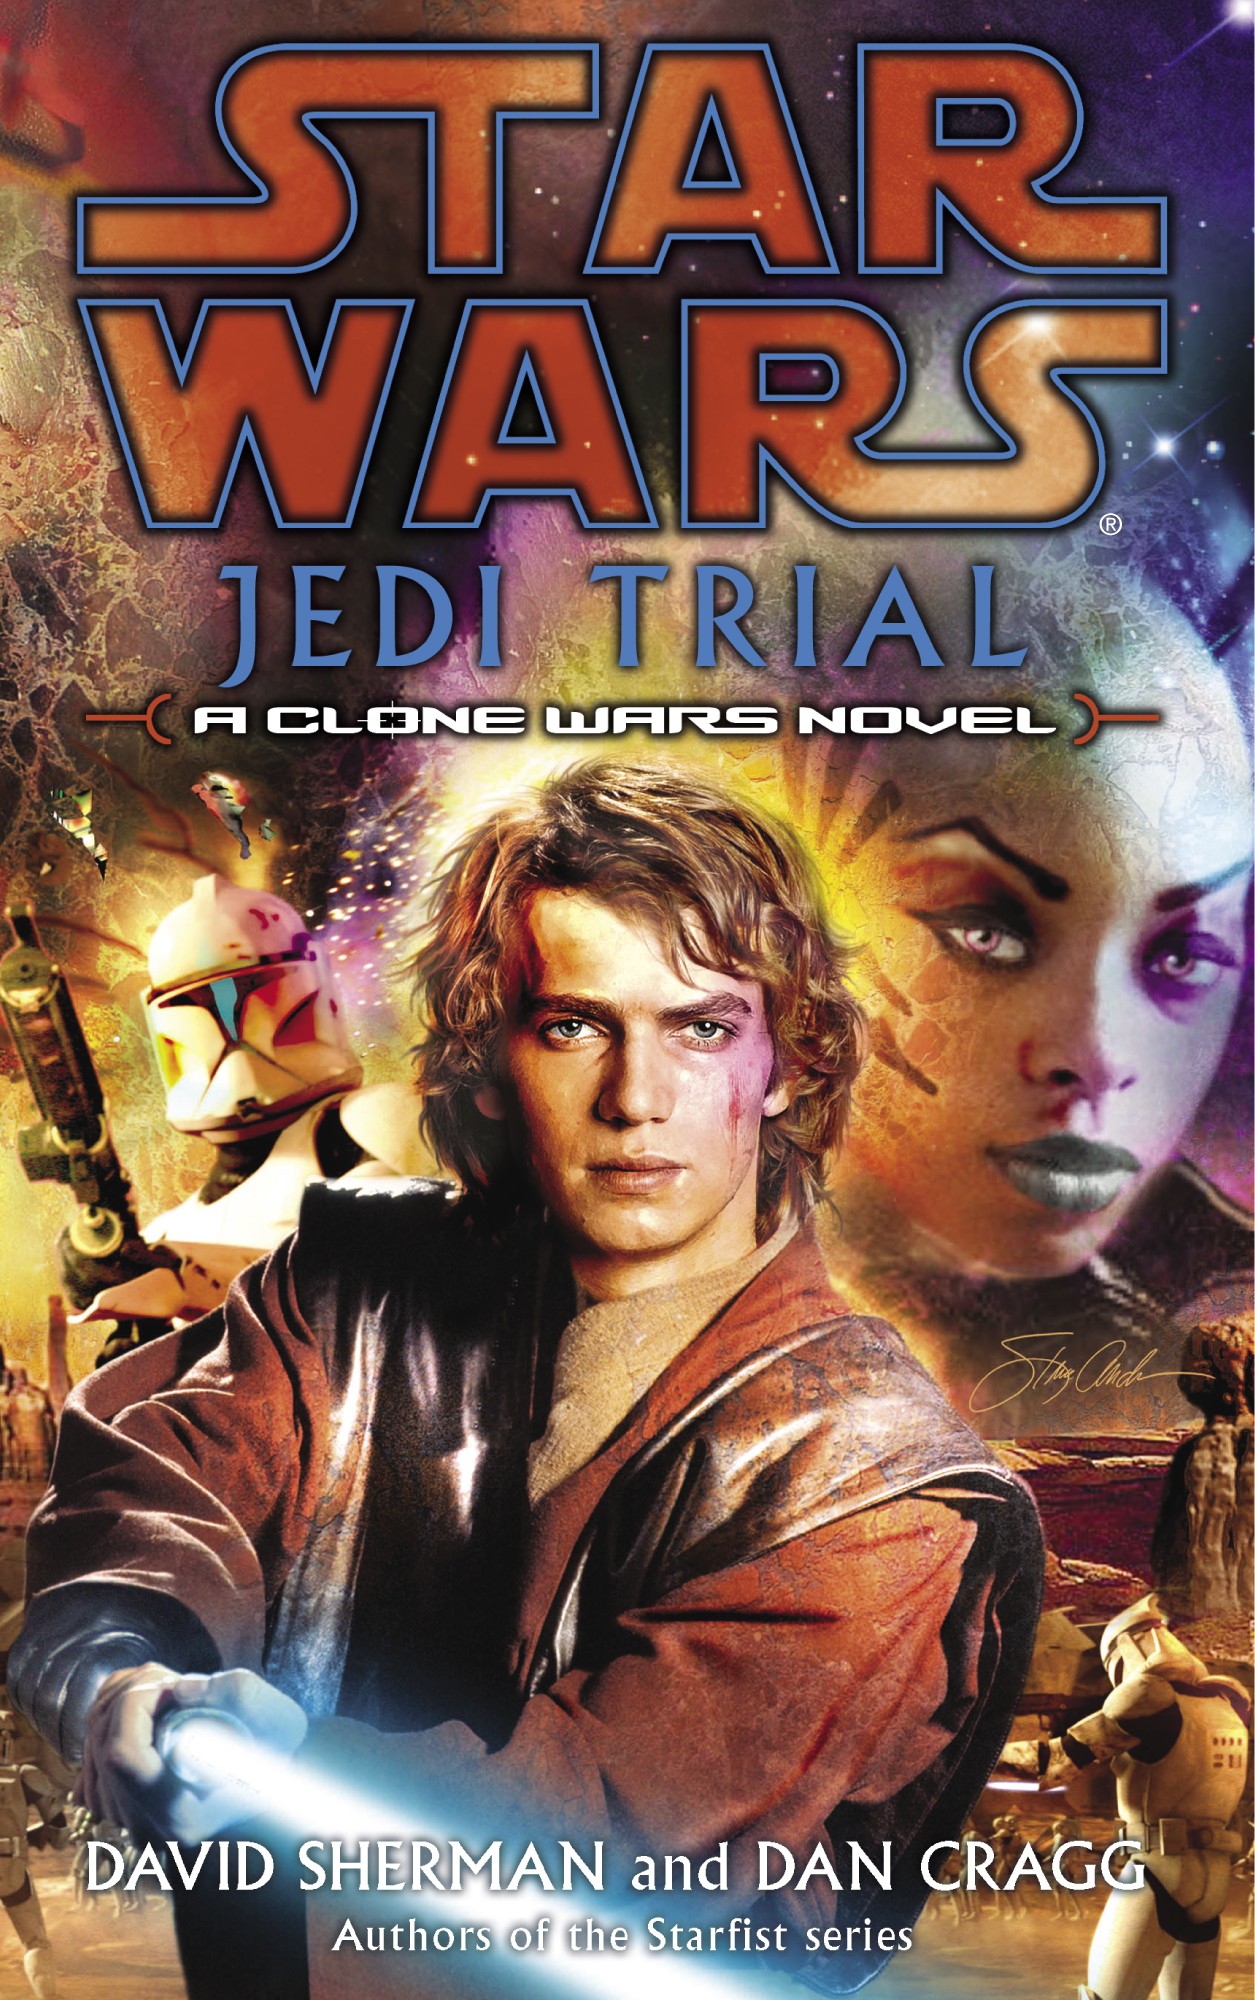 Okładka wydania oryginalnego - Jedi Trial.